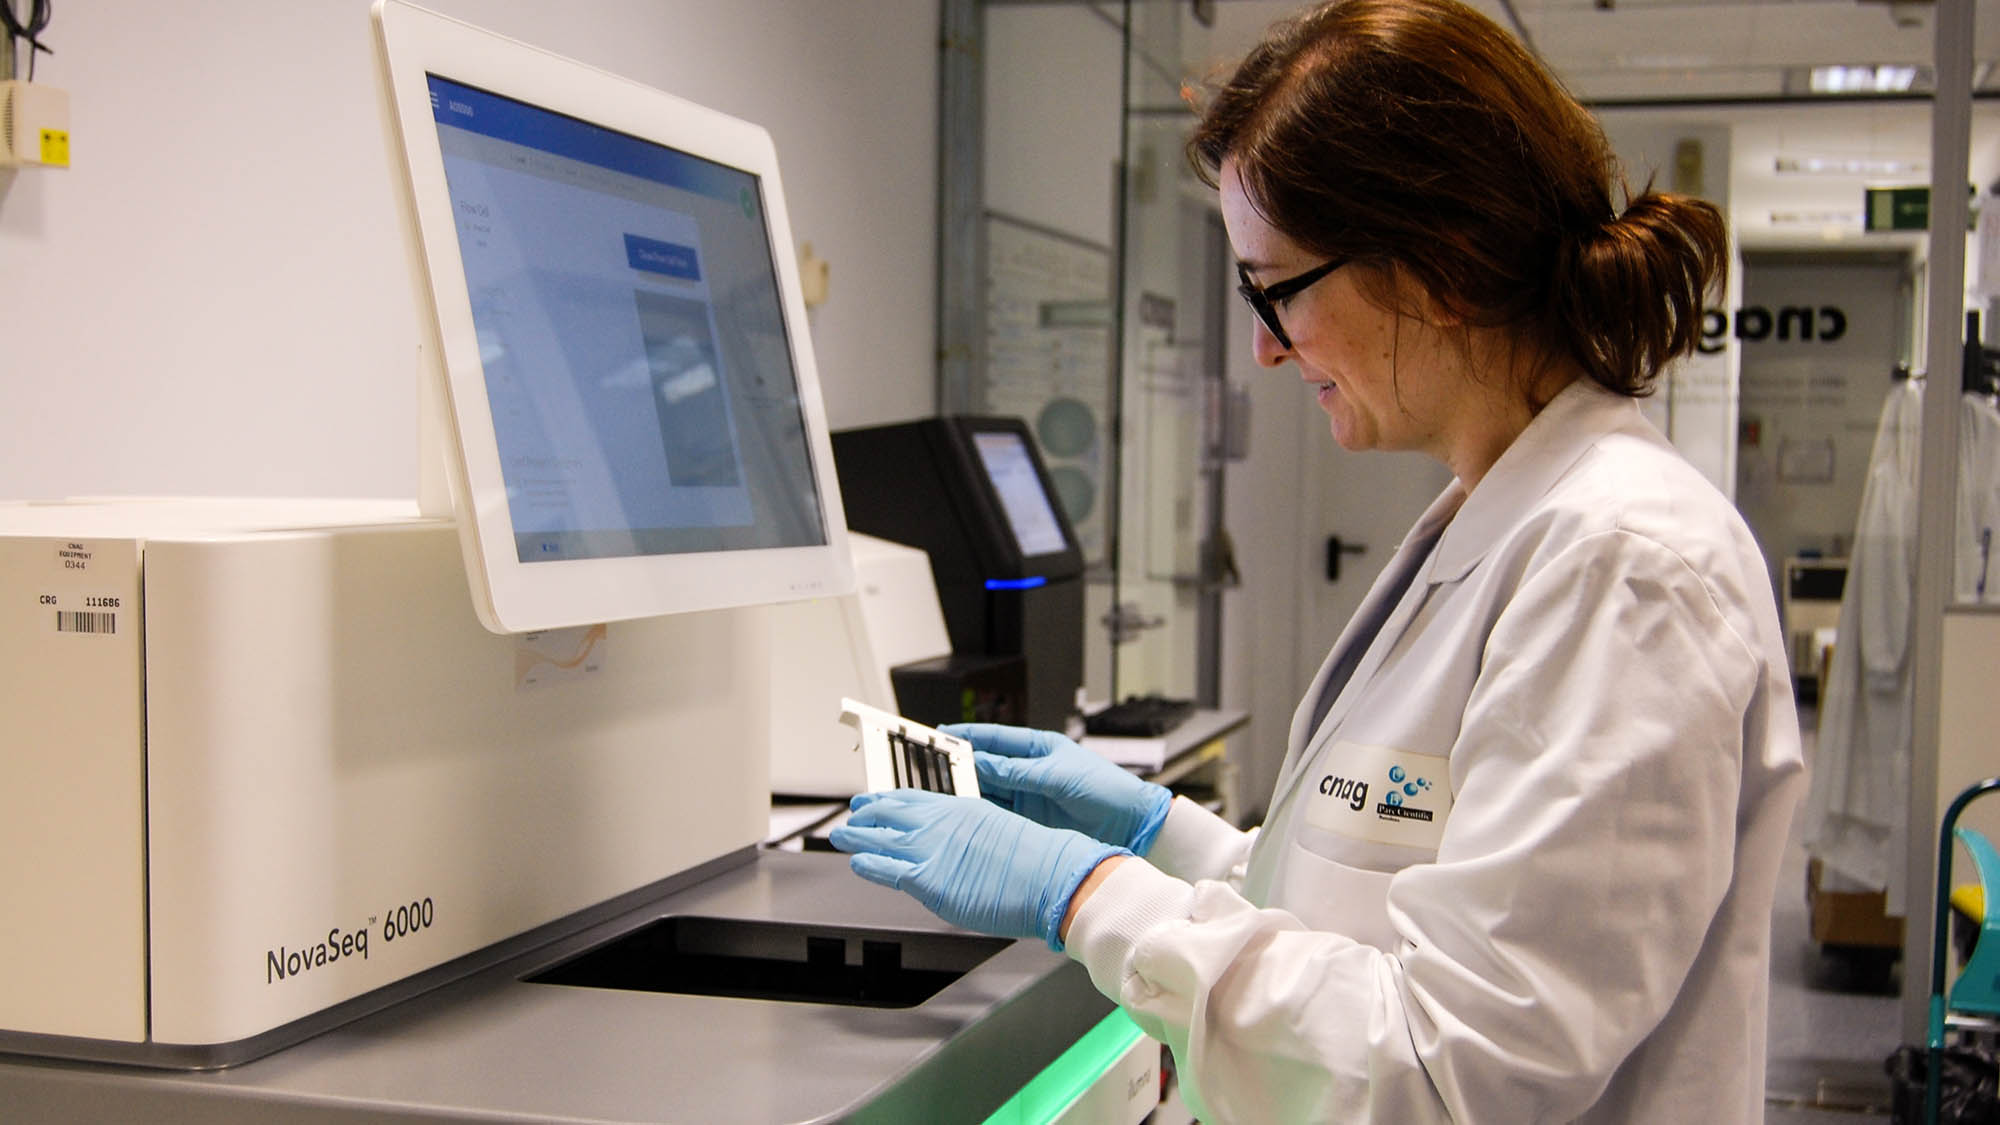 El CNAG-CRG va participar en el projecte del genoma Pan-Cancer mitjançant la seqüenciació de 100 mostres de leucèmia limfàtica crònica.